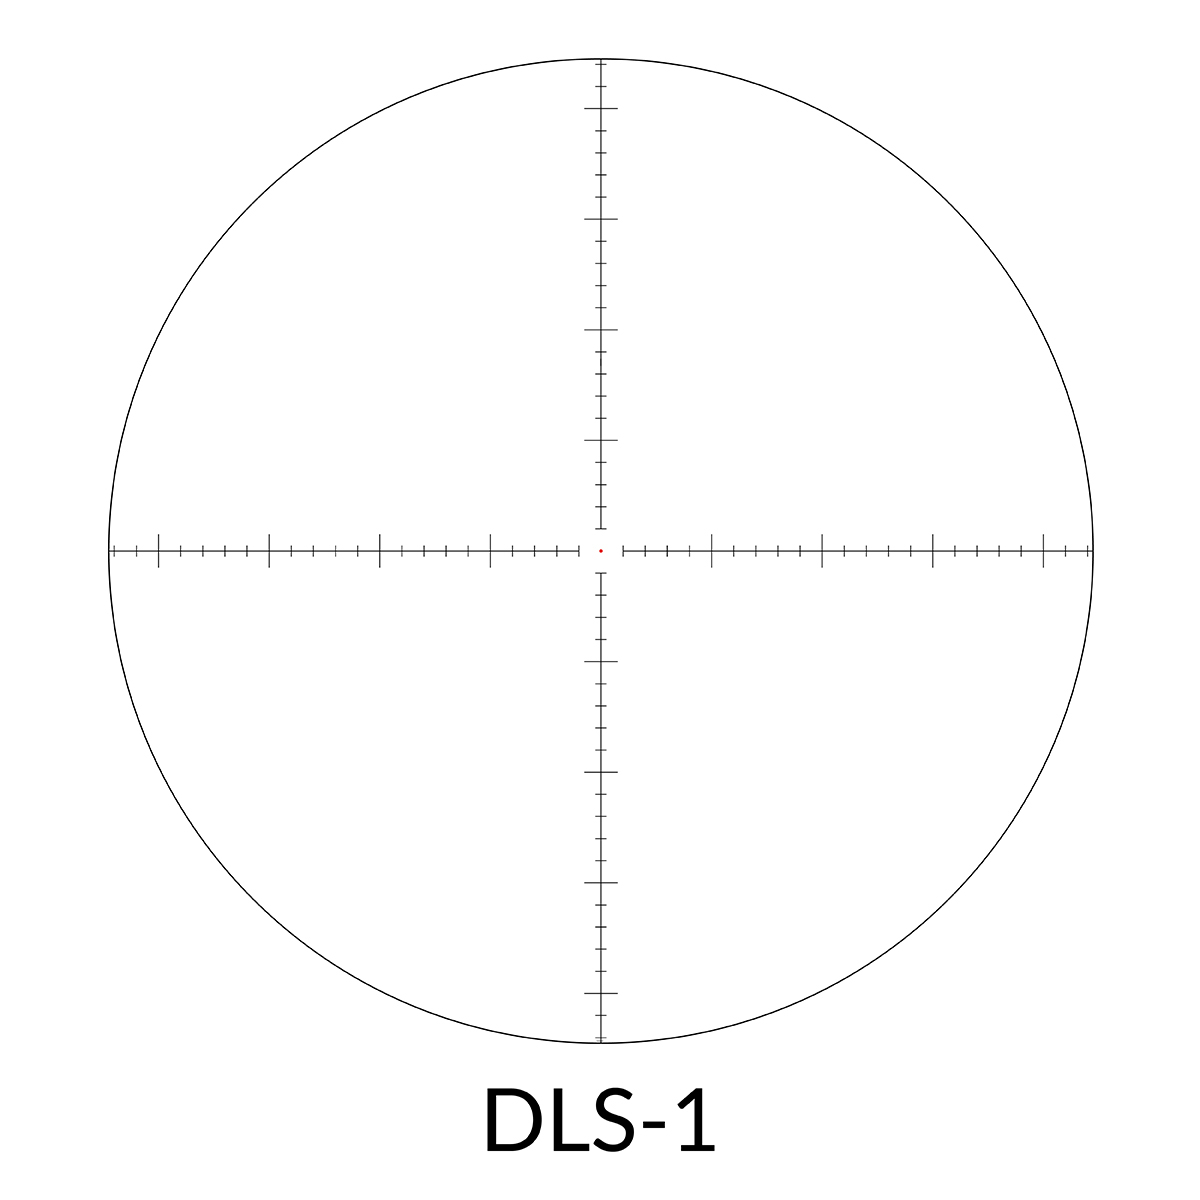 DELTA Stryker DLS-1 Reticle